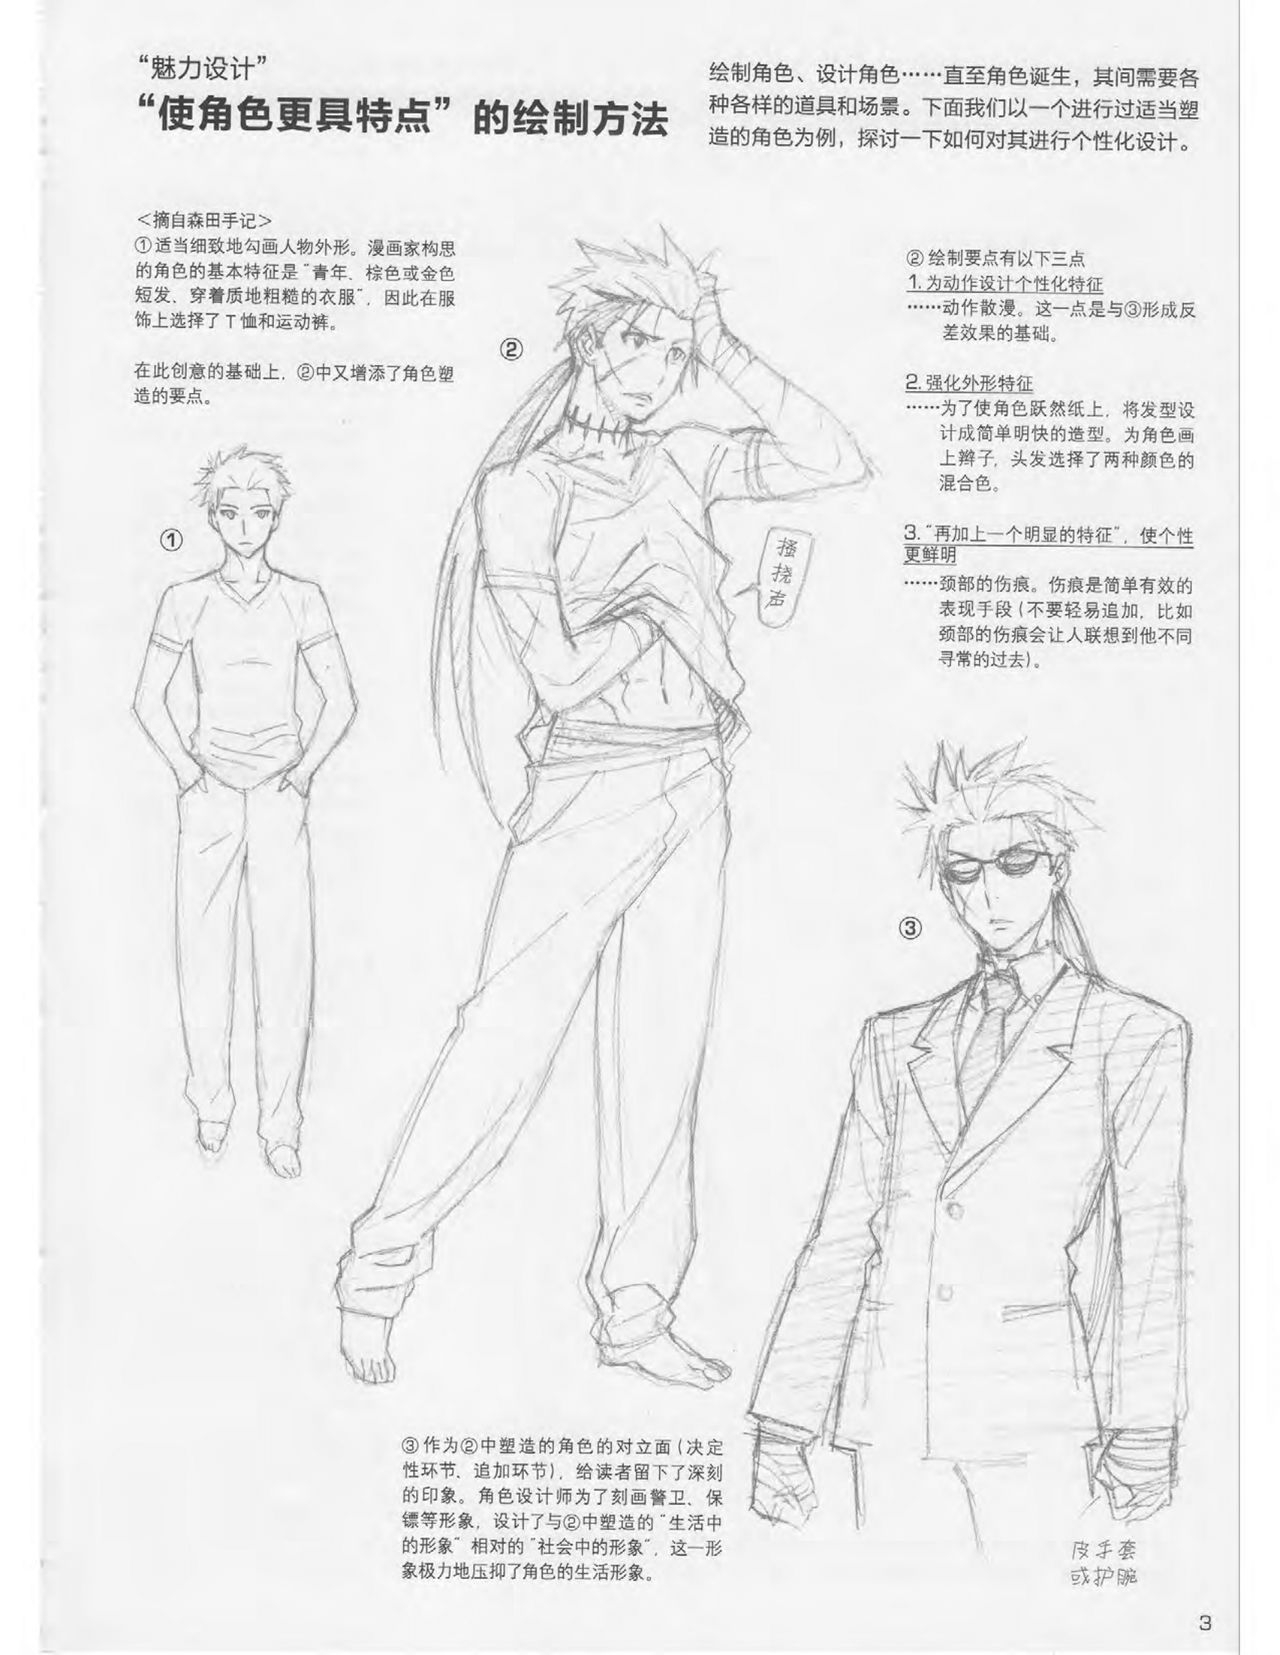 Japanese Manga Master Lecture 3: Lin Akira and Kakumaru Maru Talk About Glamorous Character Modeling 3